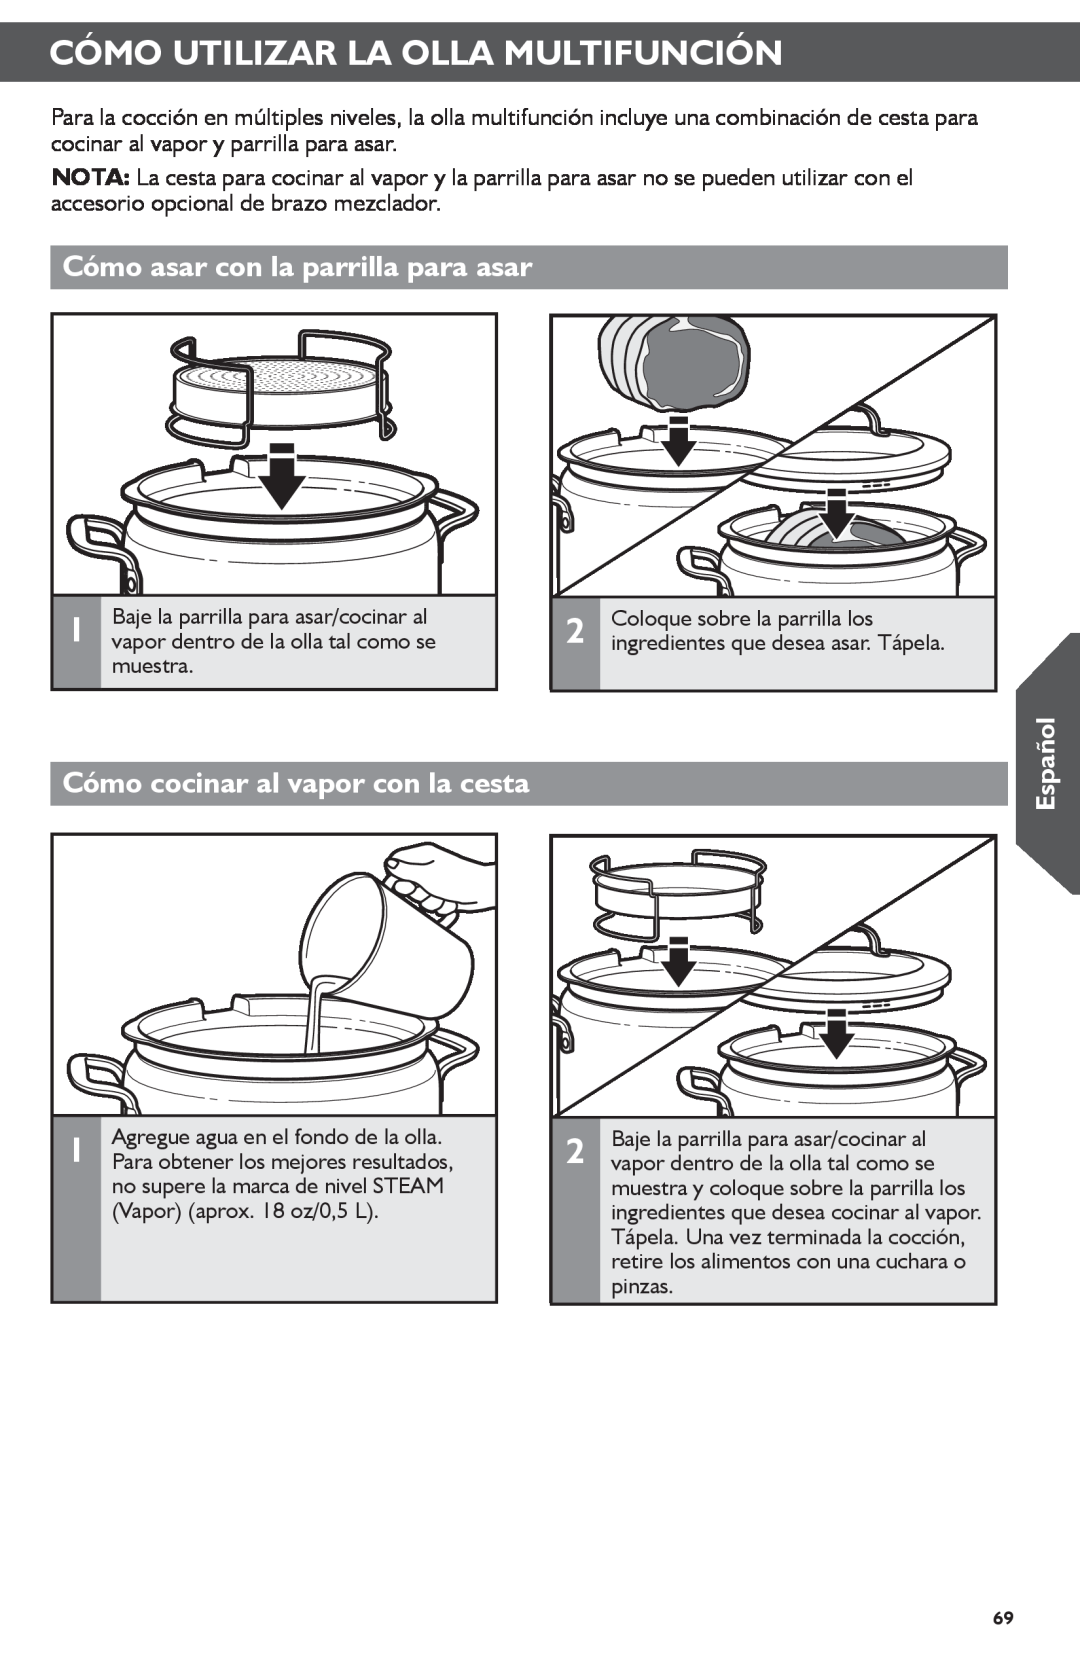 KitchenAid KMC4241 manual Cómo asar con la parrilla para asar, Cómo cocinar al vapor con la cesta, Español 